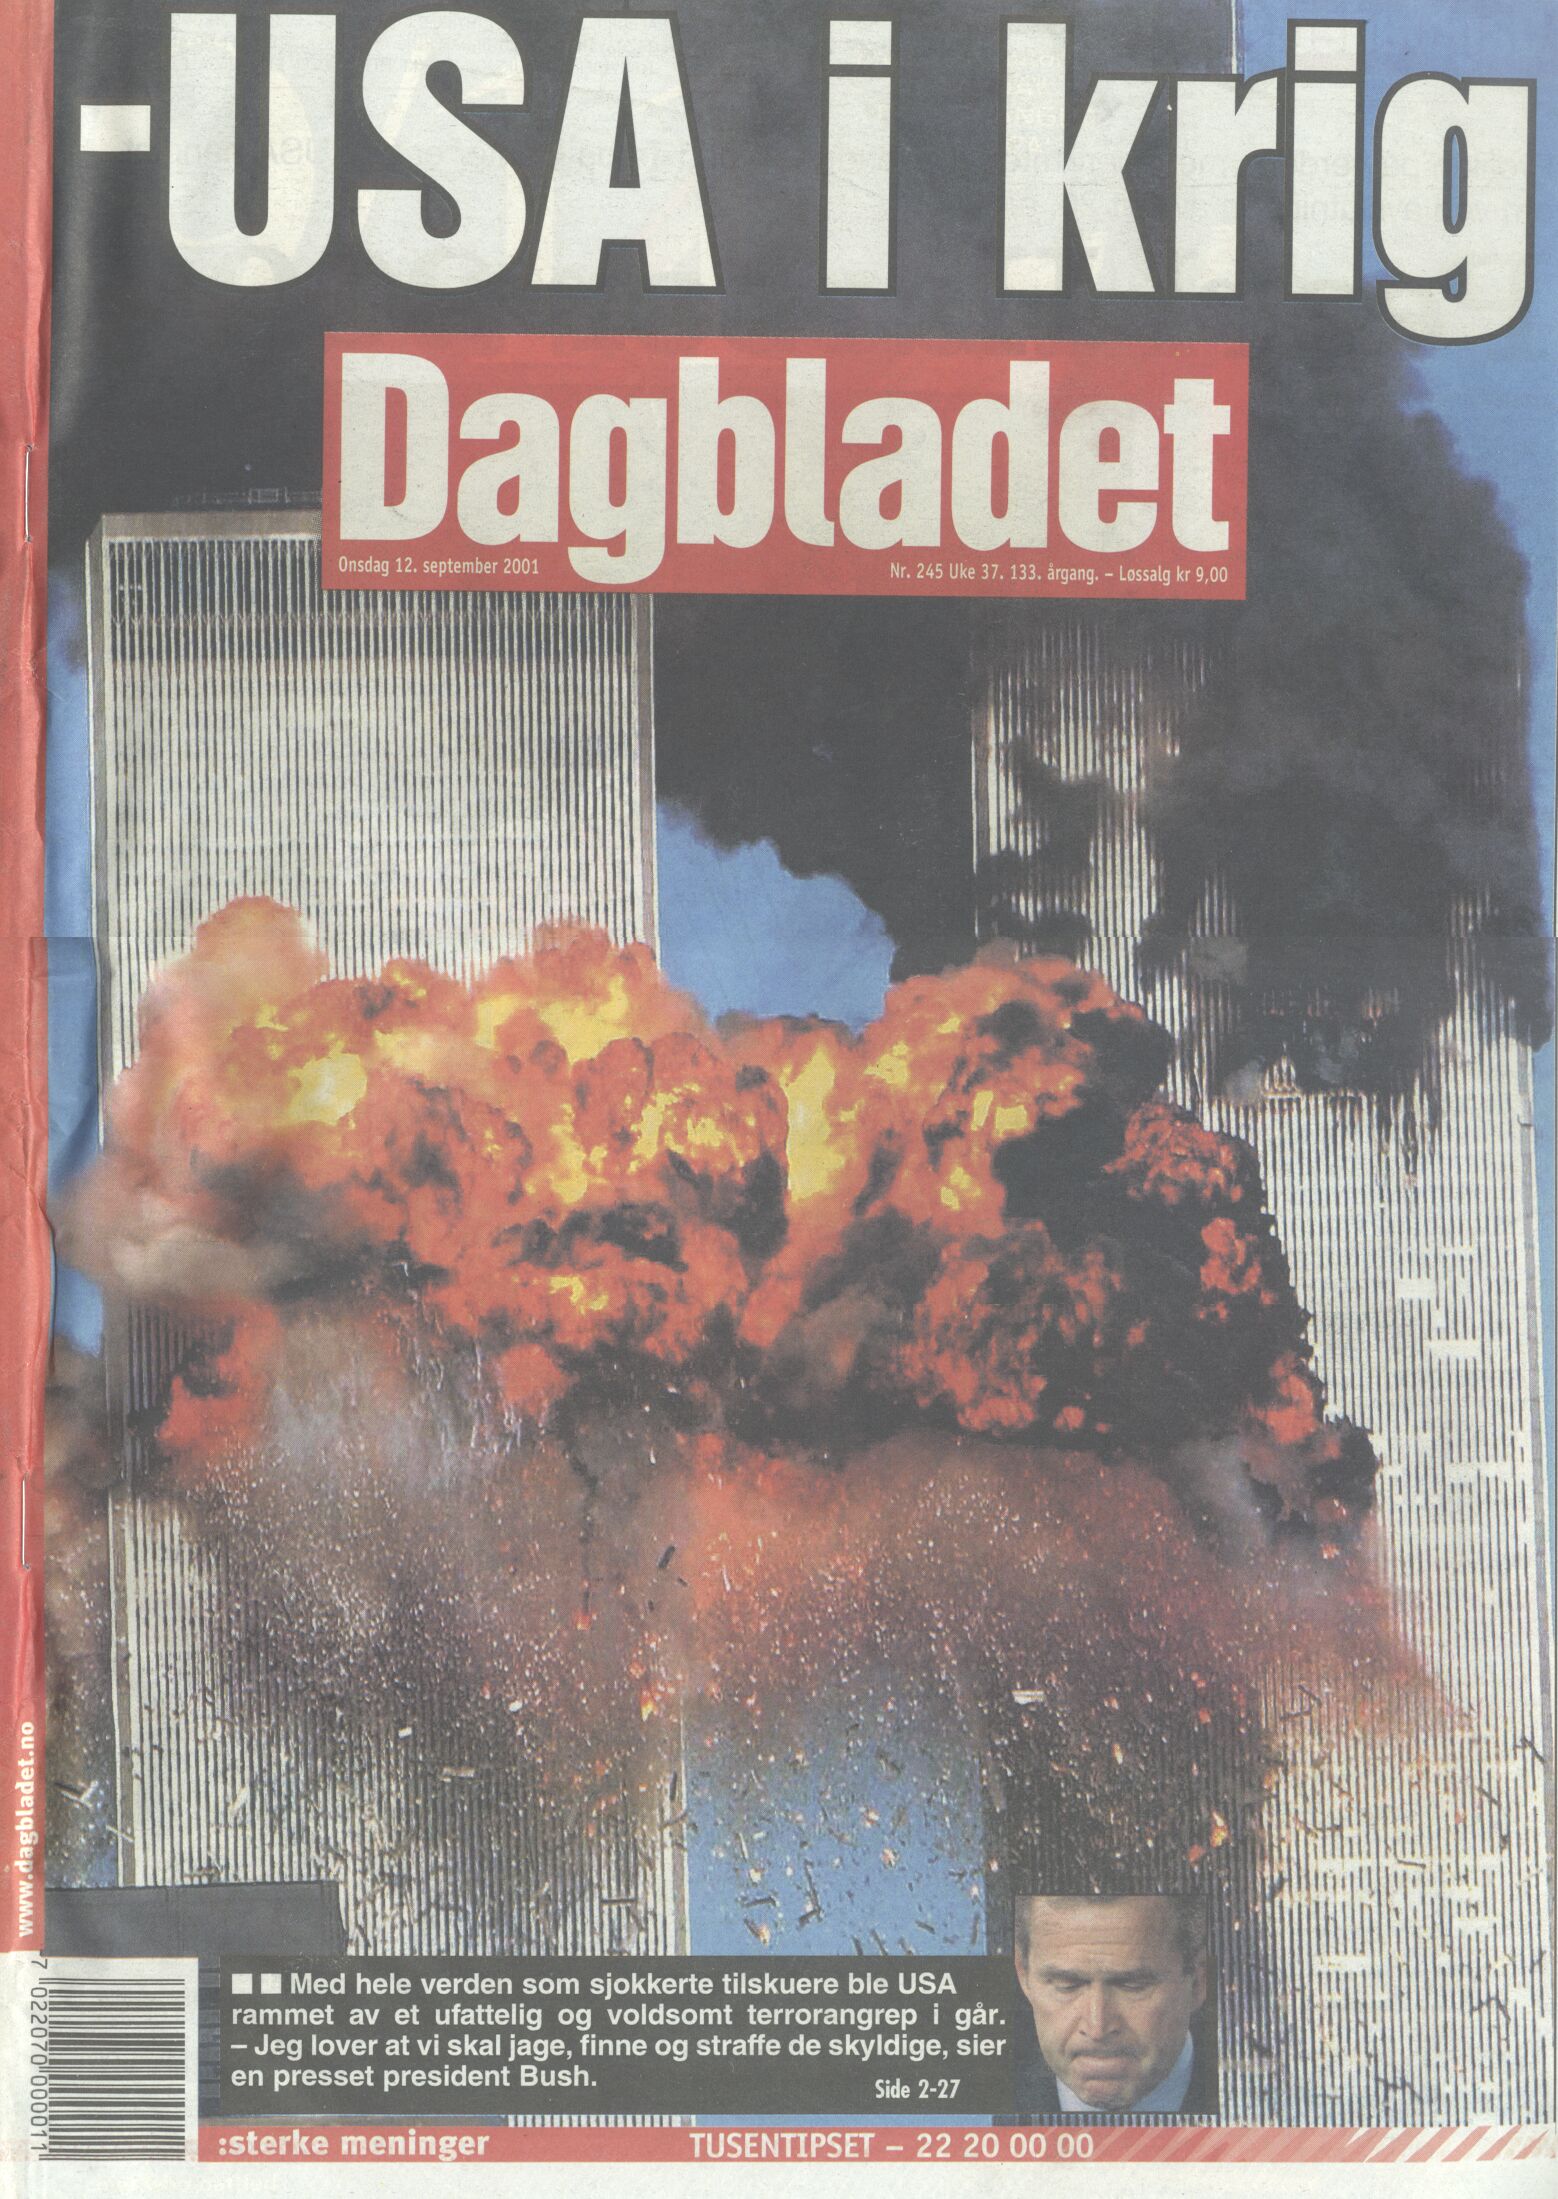 Billede 3. Forsiden af den norske avis Dagbladet, 12. September, 2001.